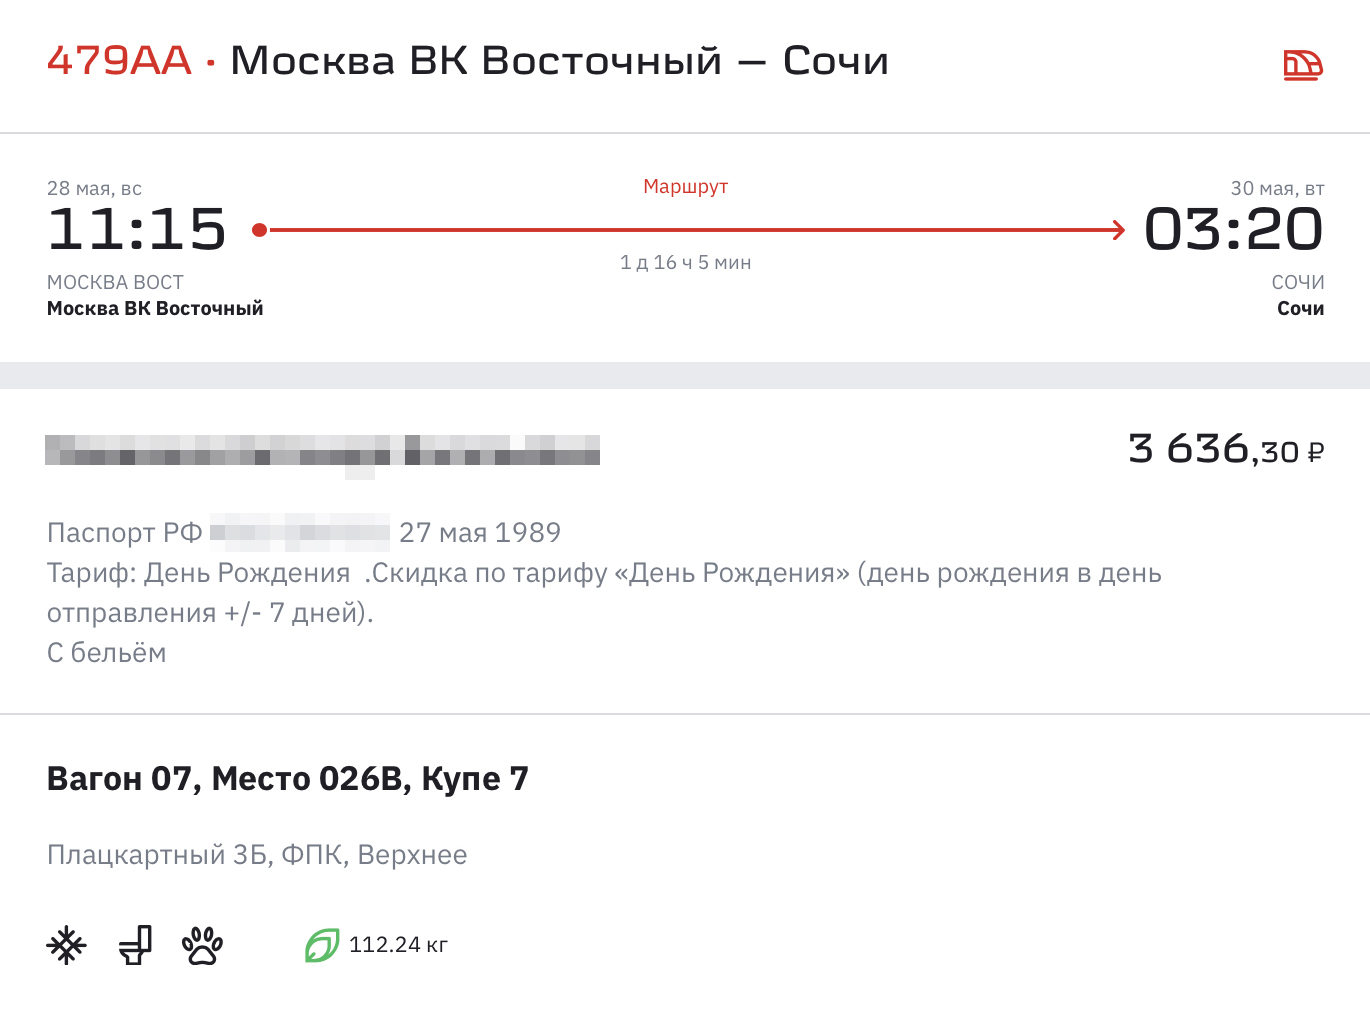 Билет в плацкартный вагон по маршруту Москва — Сочи со скидкой в честь дня рождения стоит 3636 ₽. Без скидки — 4019 ₽